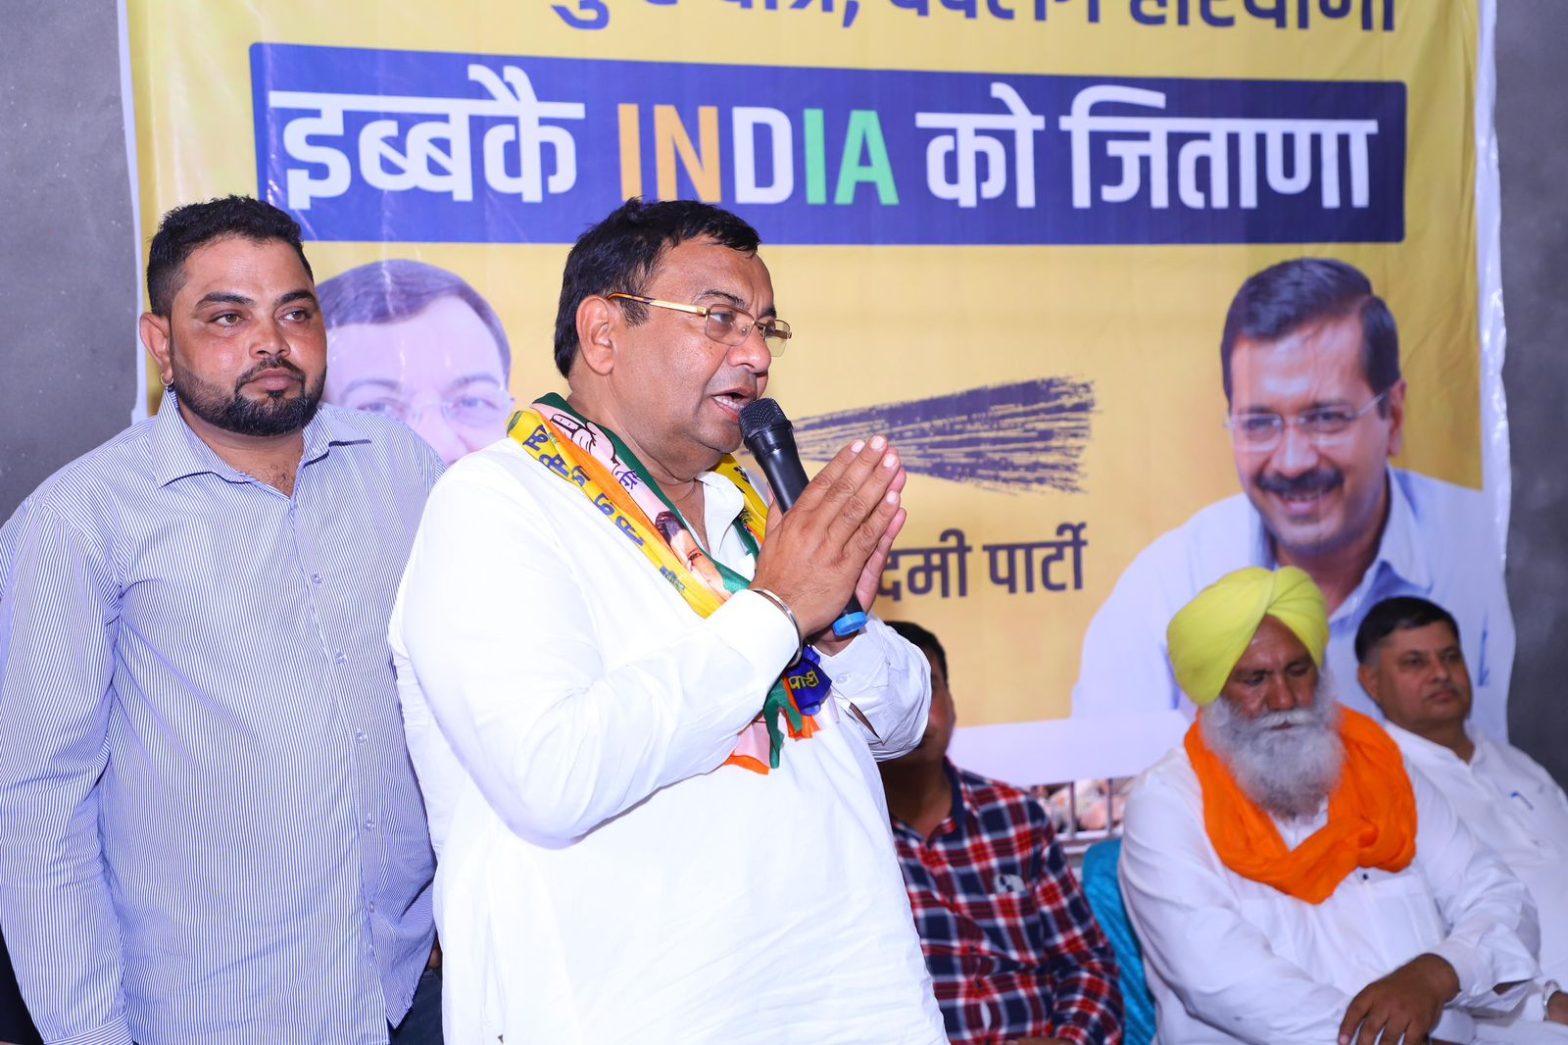 भाजपा ने हरियाणा में मुख्यमंत्री का चेहरा बदला, जनता सरकार बदलेगी: डॉ. सुशील गुप्ता